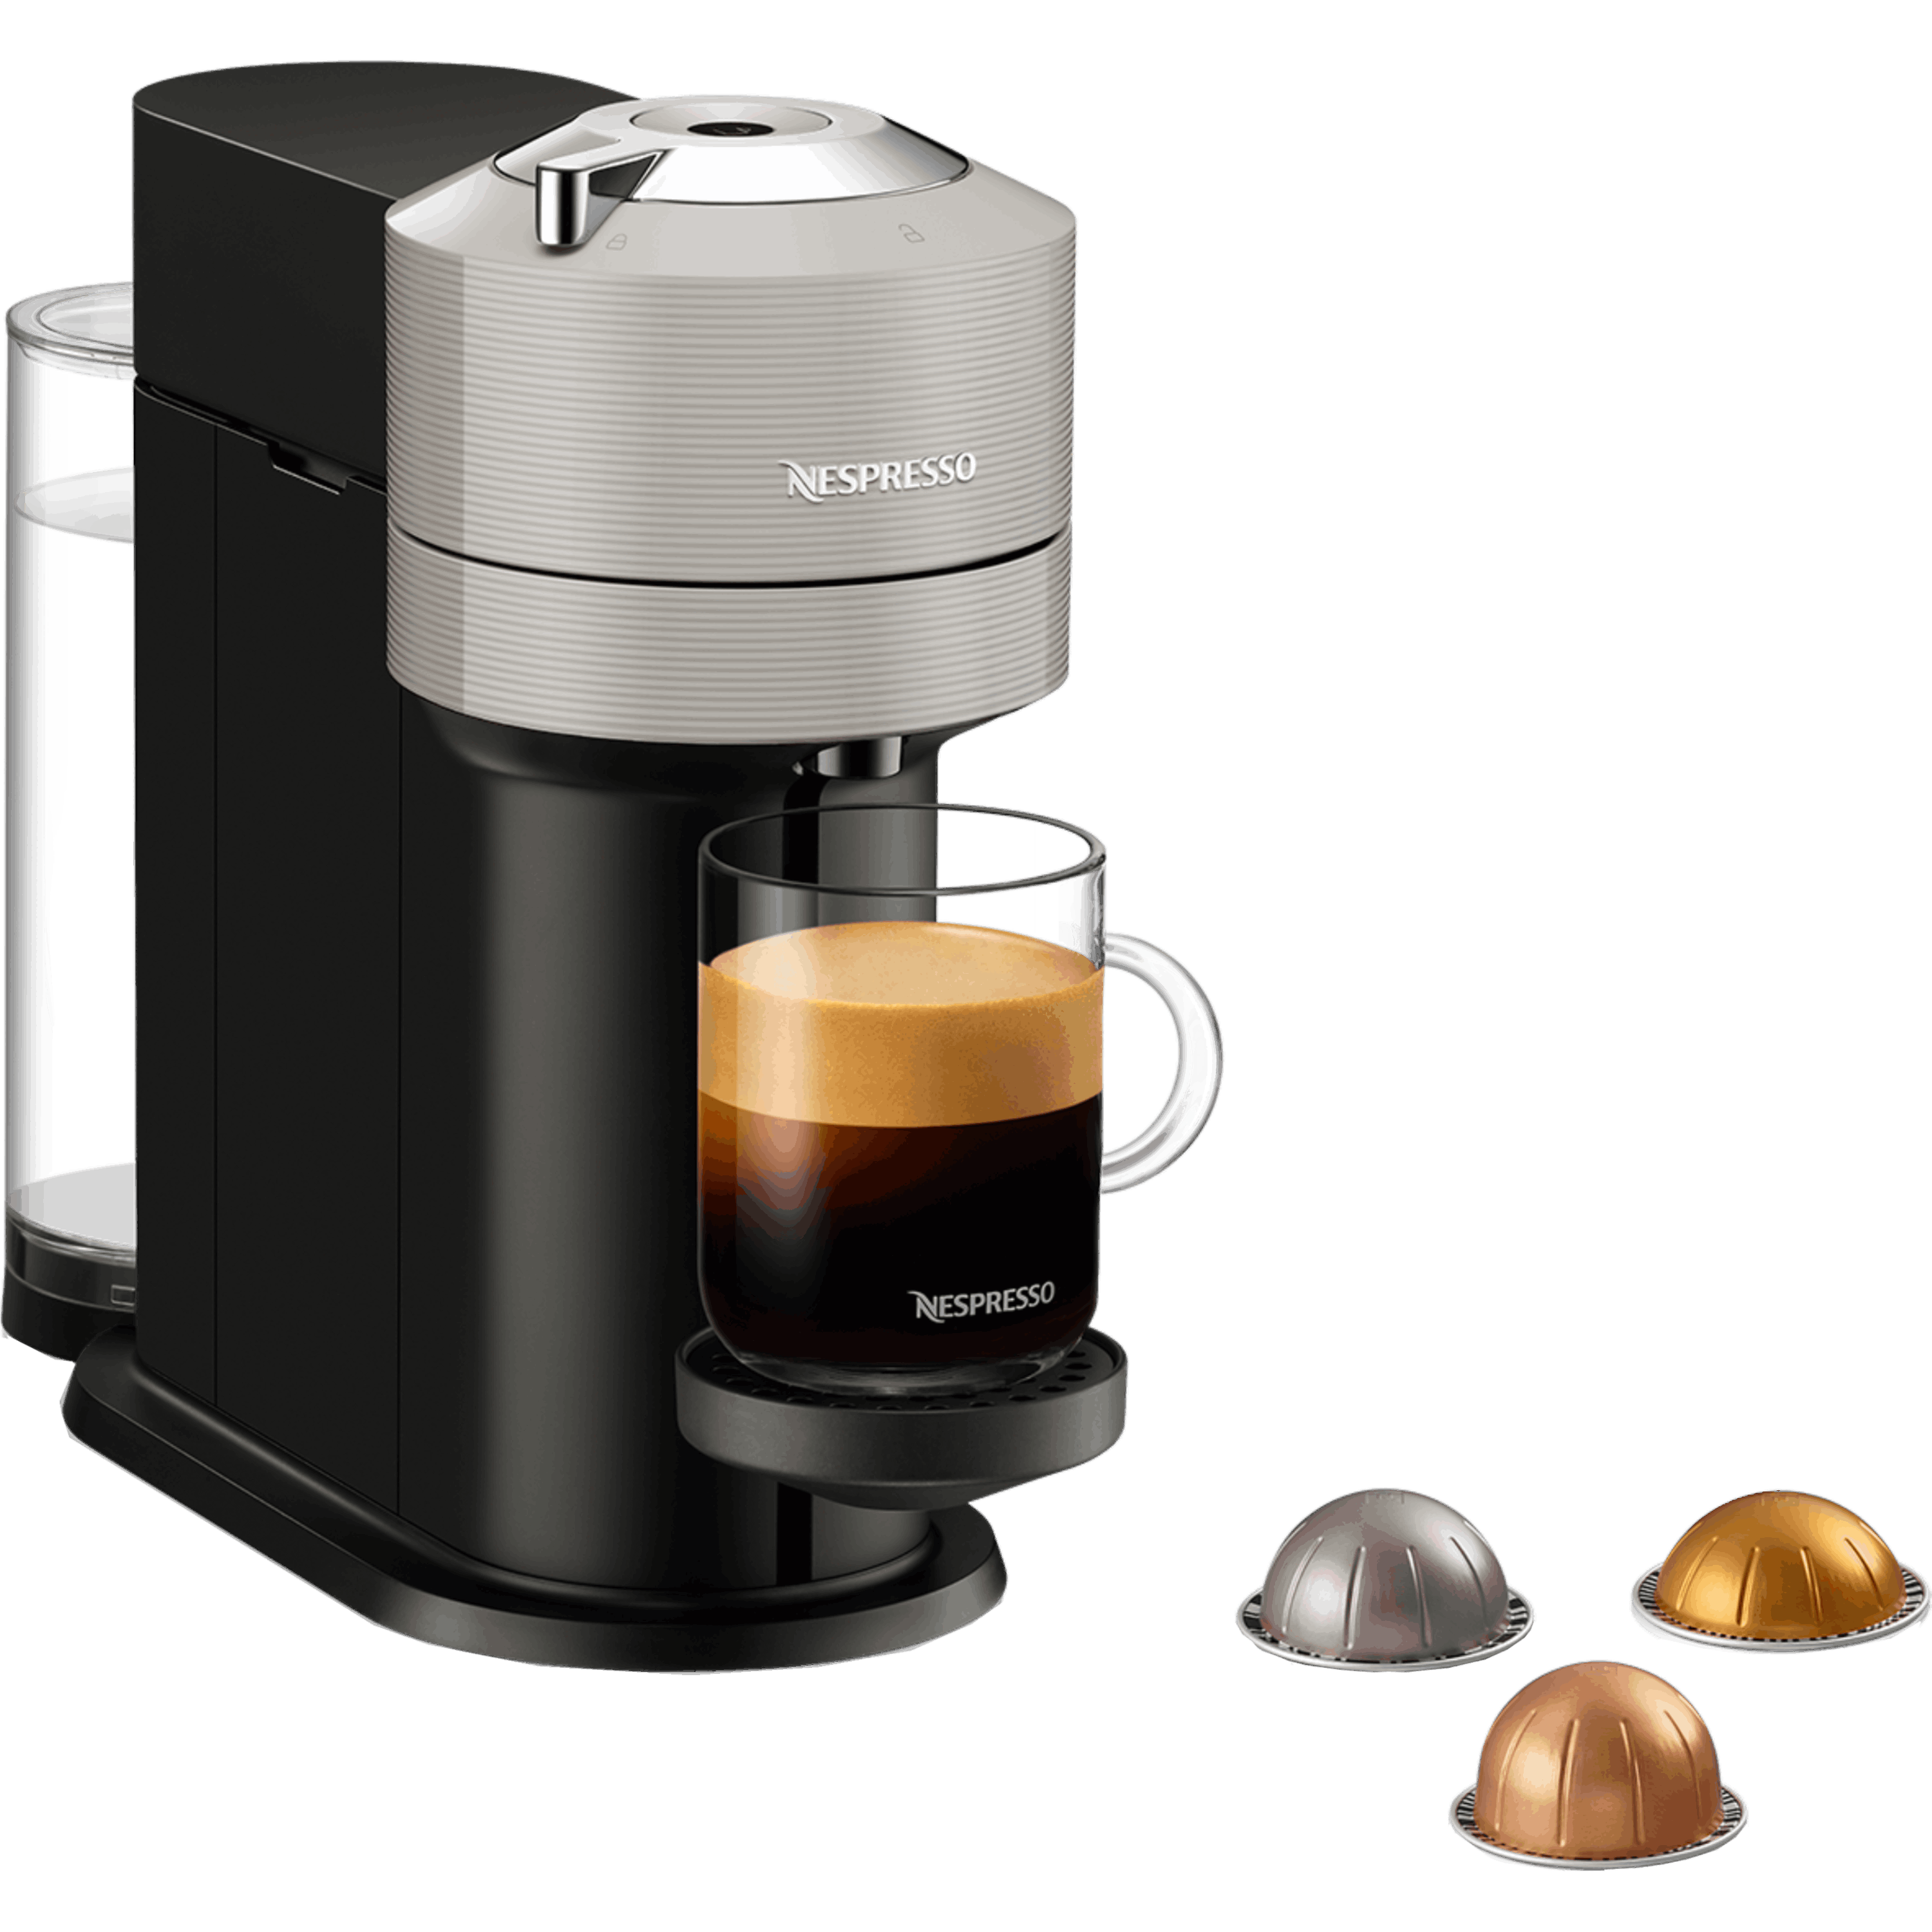 ماكينة قهوة VertuoNext  NESPRESSO موديل GCV1 בلون فضي - مع מקציף ו 20 קפסולות  קפה  במתנה